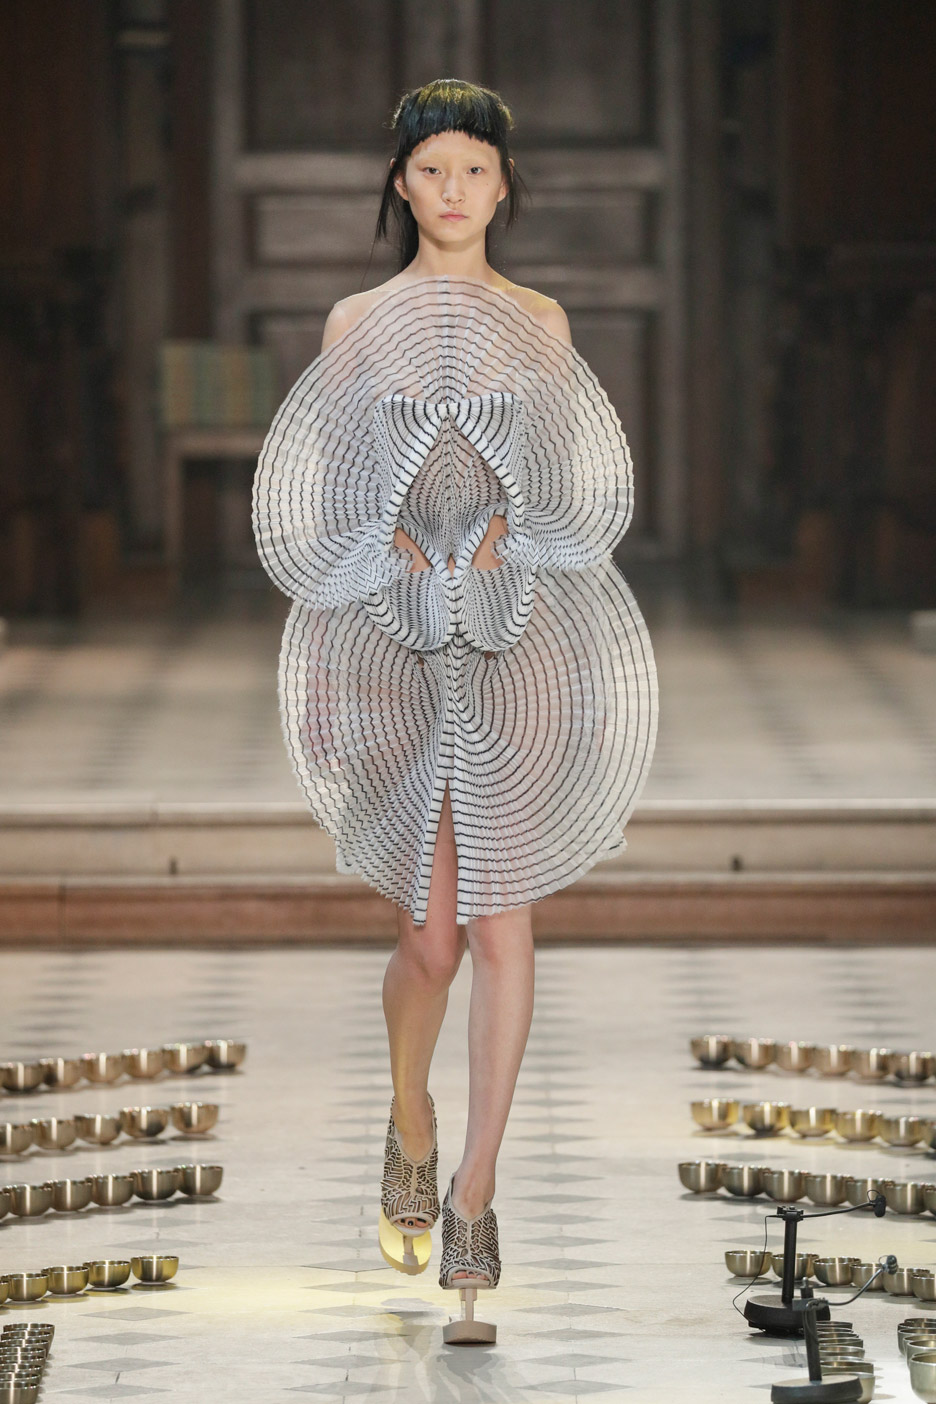 Bubble dress designer